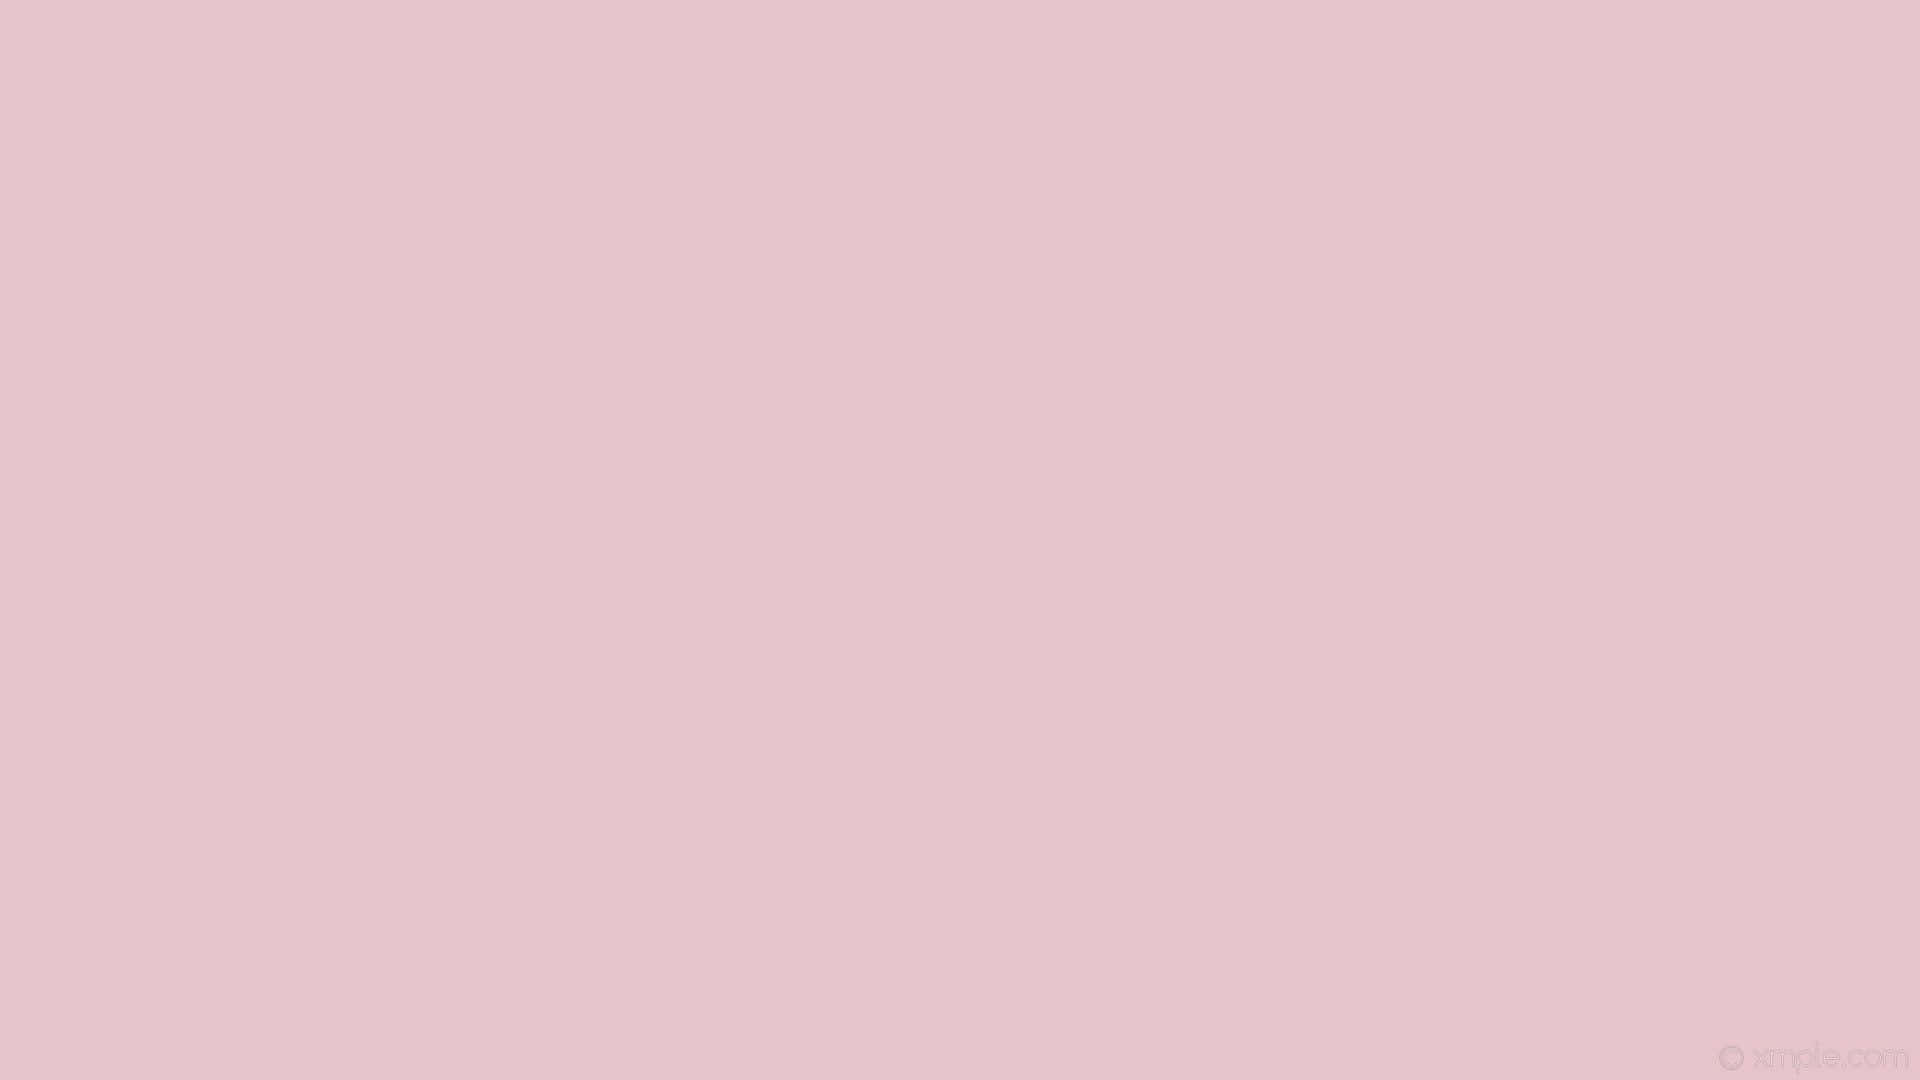 Et simpelt pink baggrund med en blid, beroligende effekt. Wallpaper